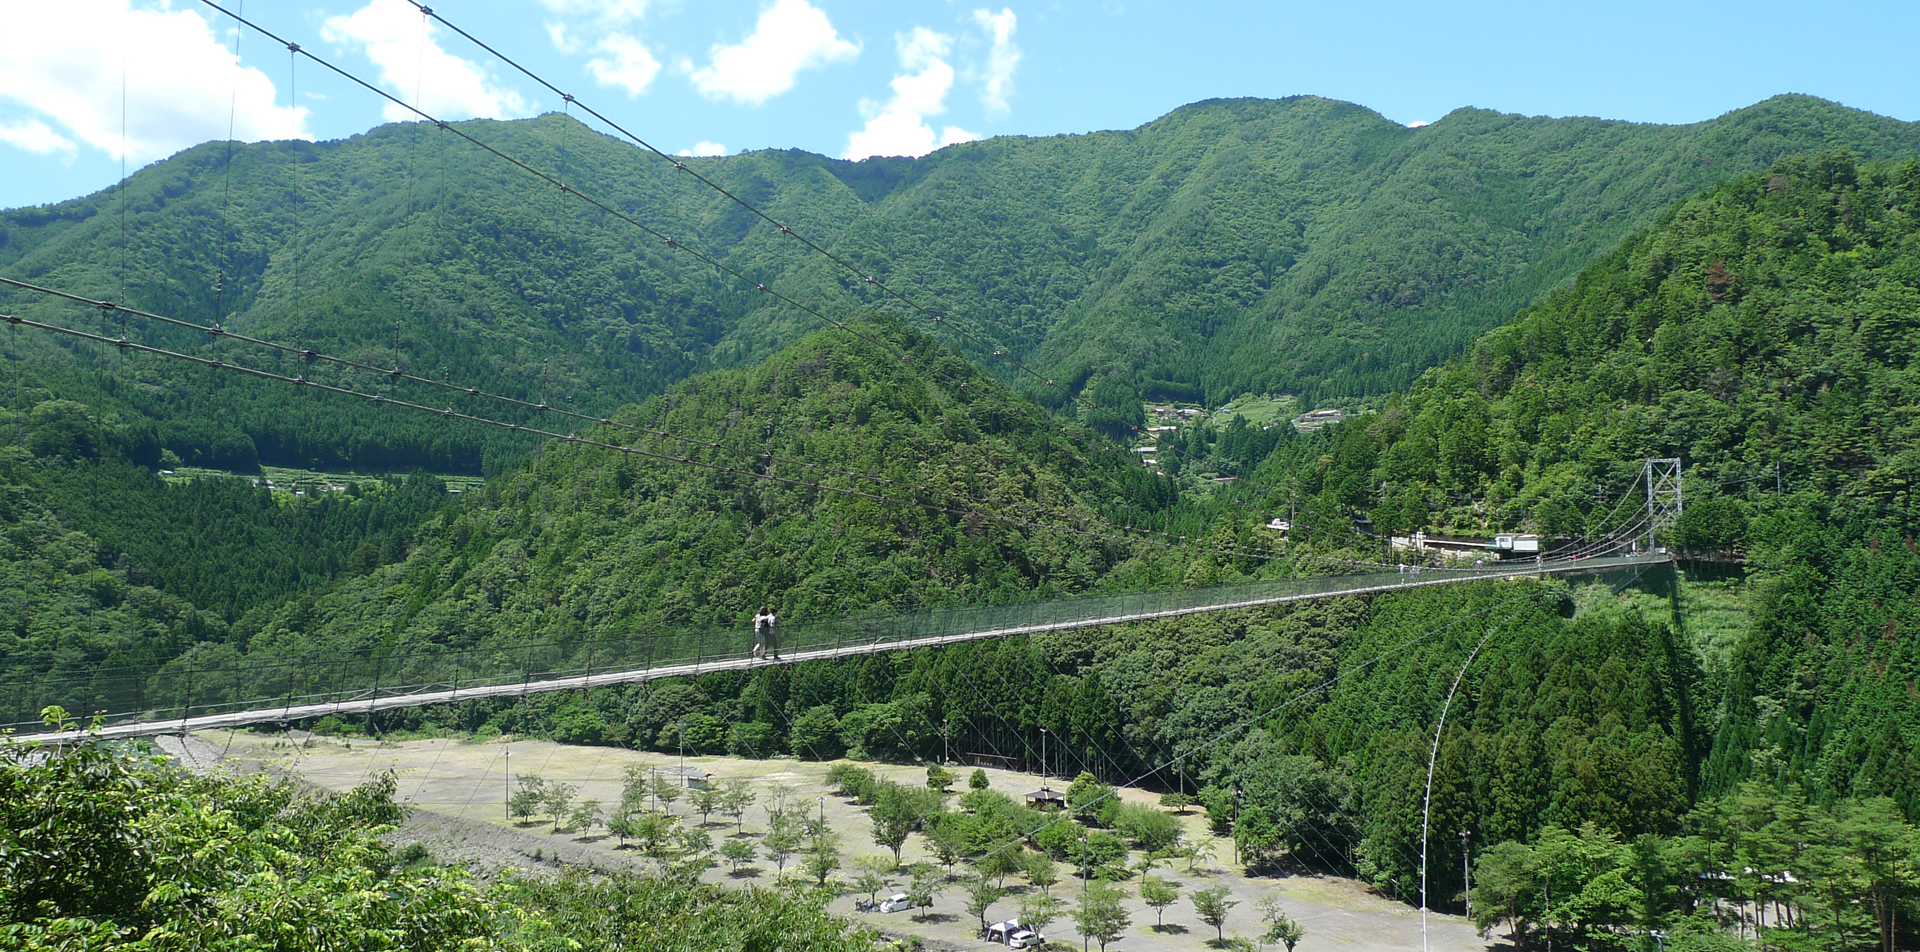 Local Life in nara okuyamato - 奈良に暮らす